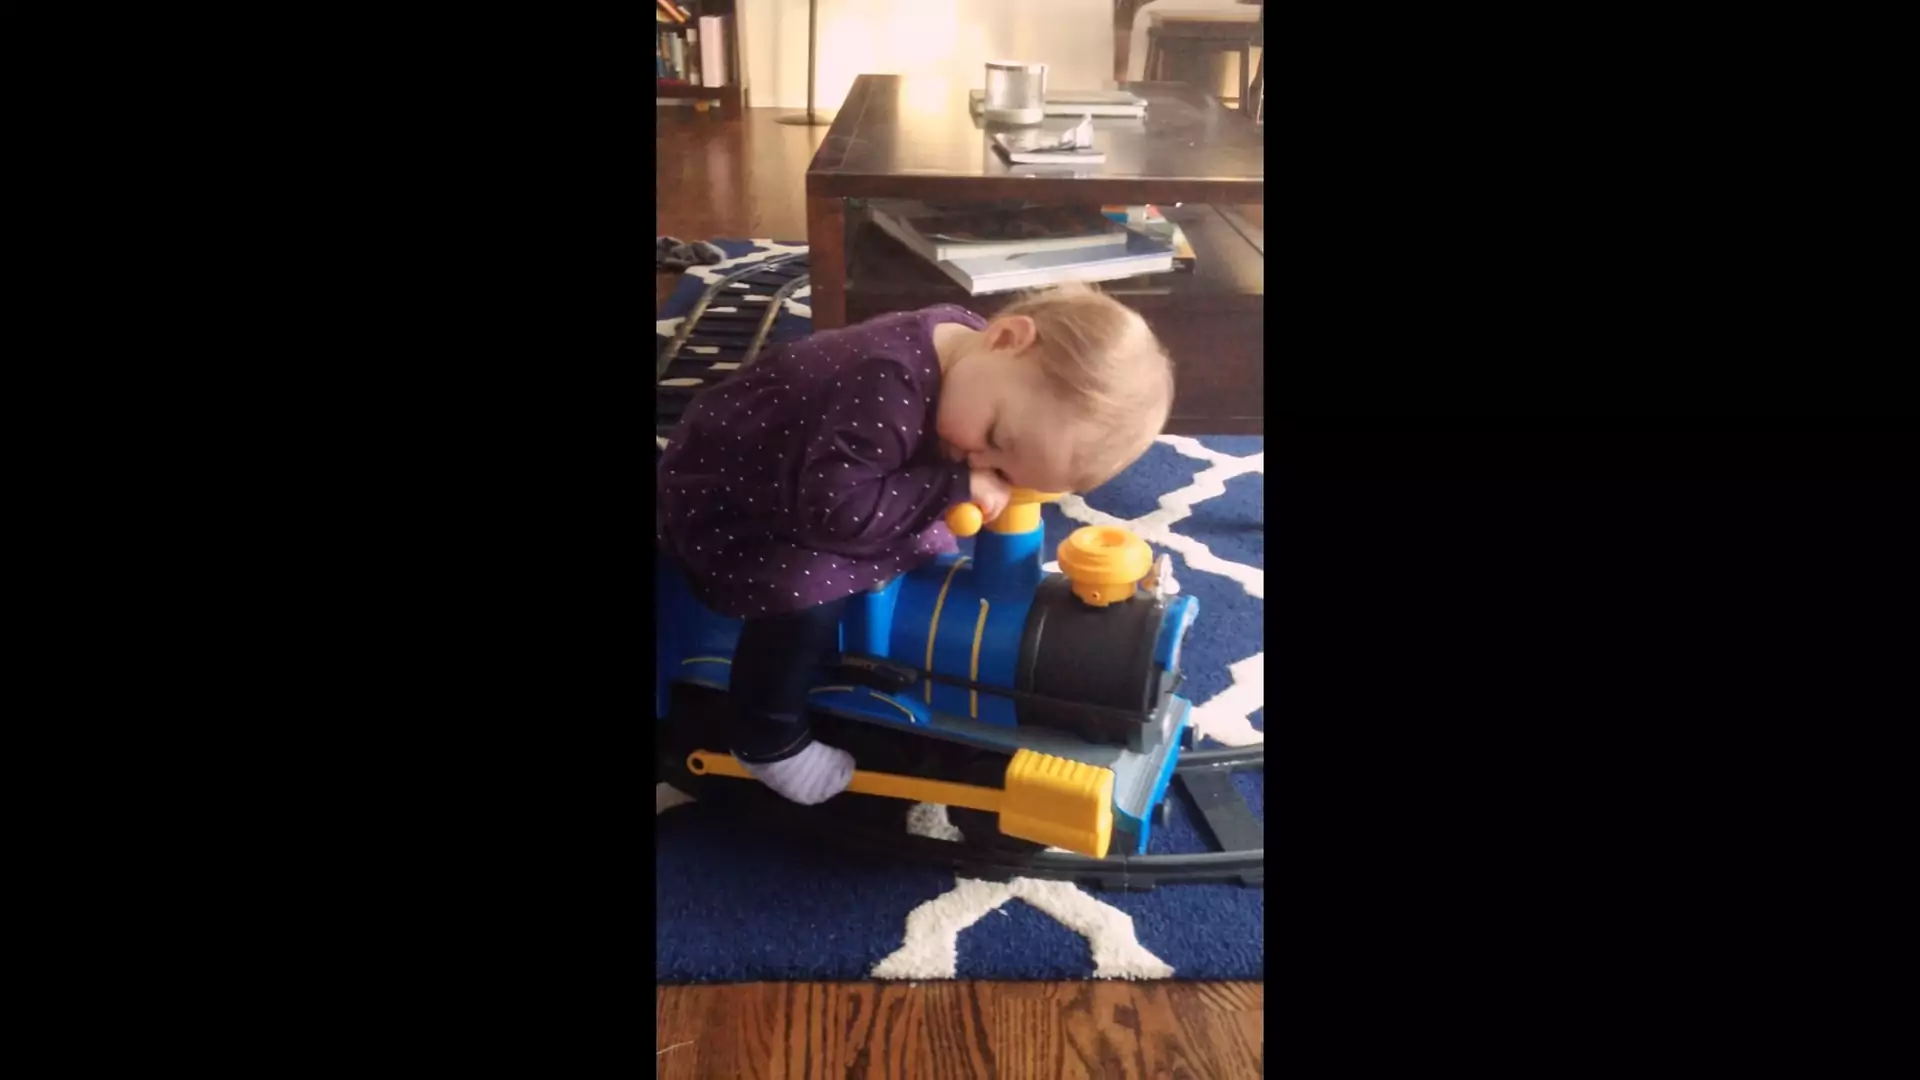 Dziecko zasnęło na zabawkowym pociągu. Przypomina rano w komunikacji miejskiej?